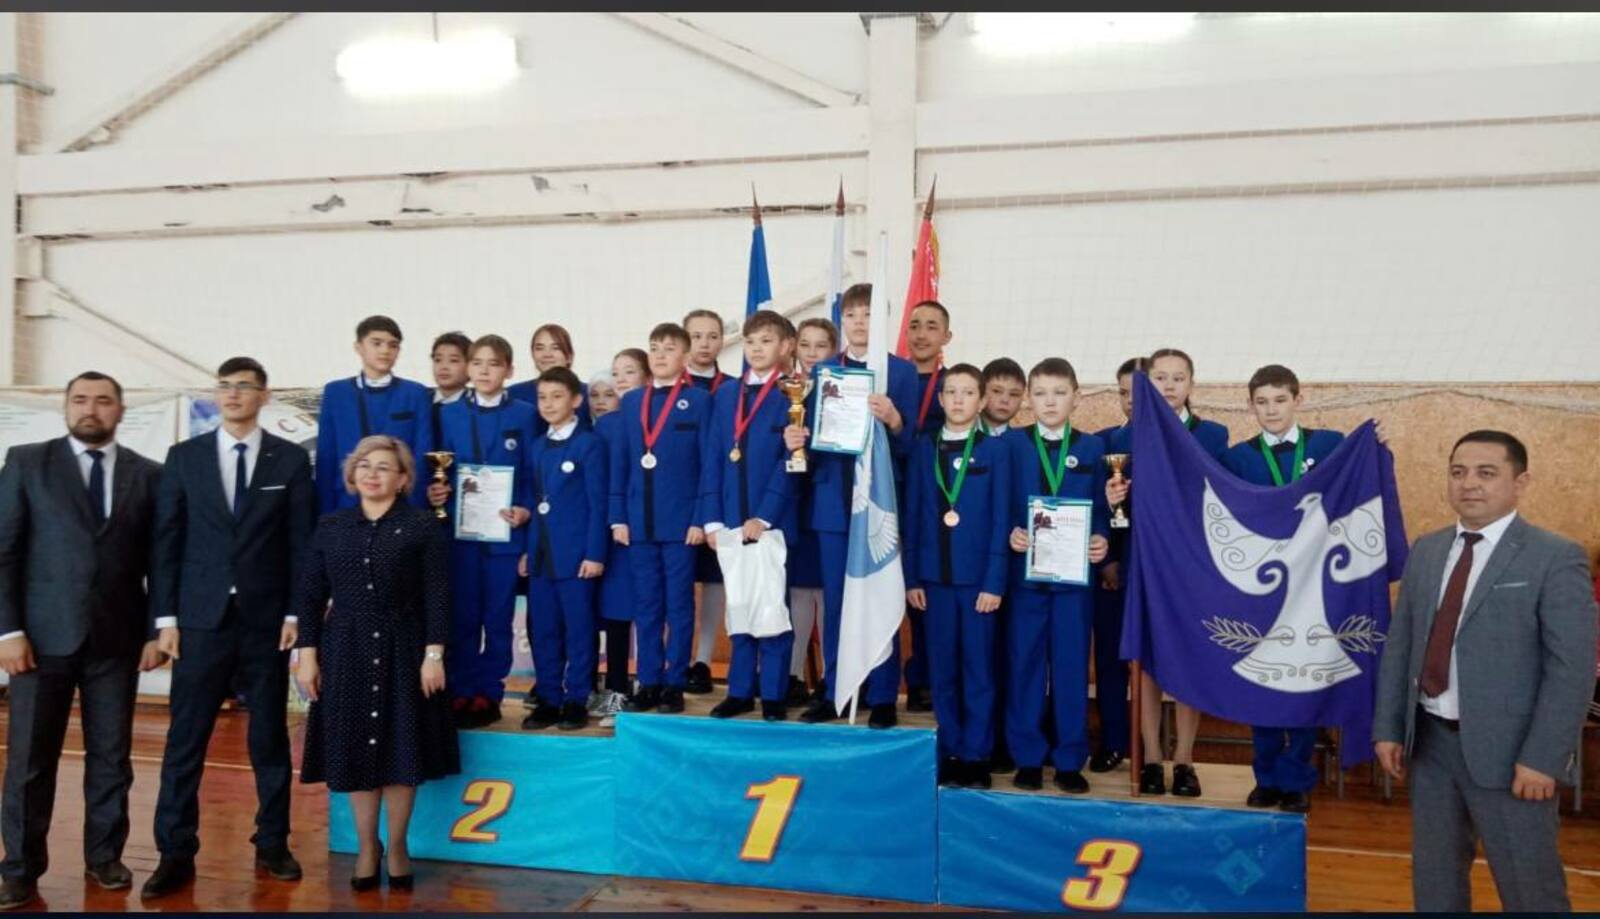 Шаймуратовский класс из района Башкирии занял второе место в спортивных играх